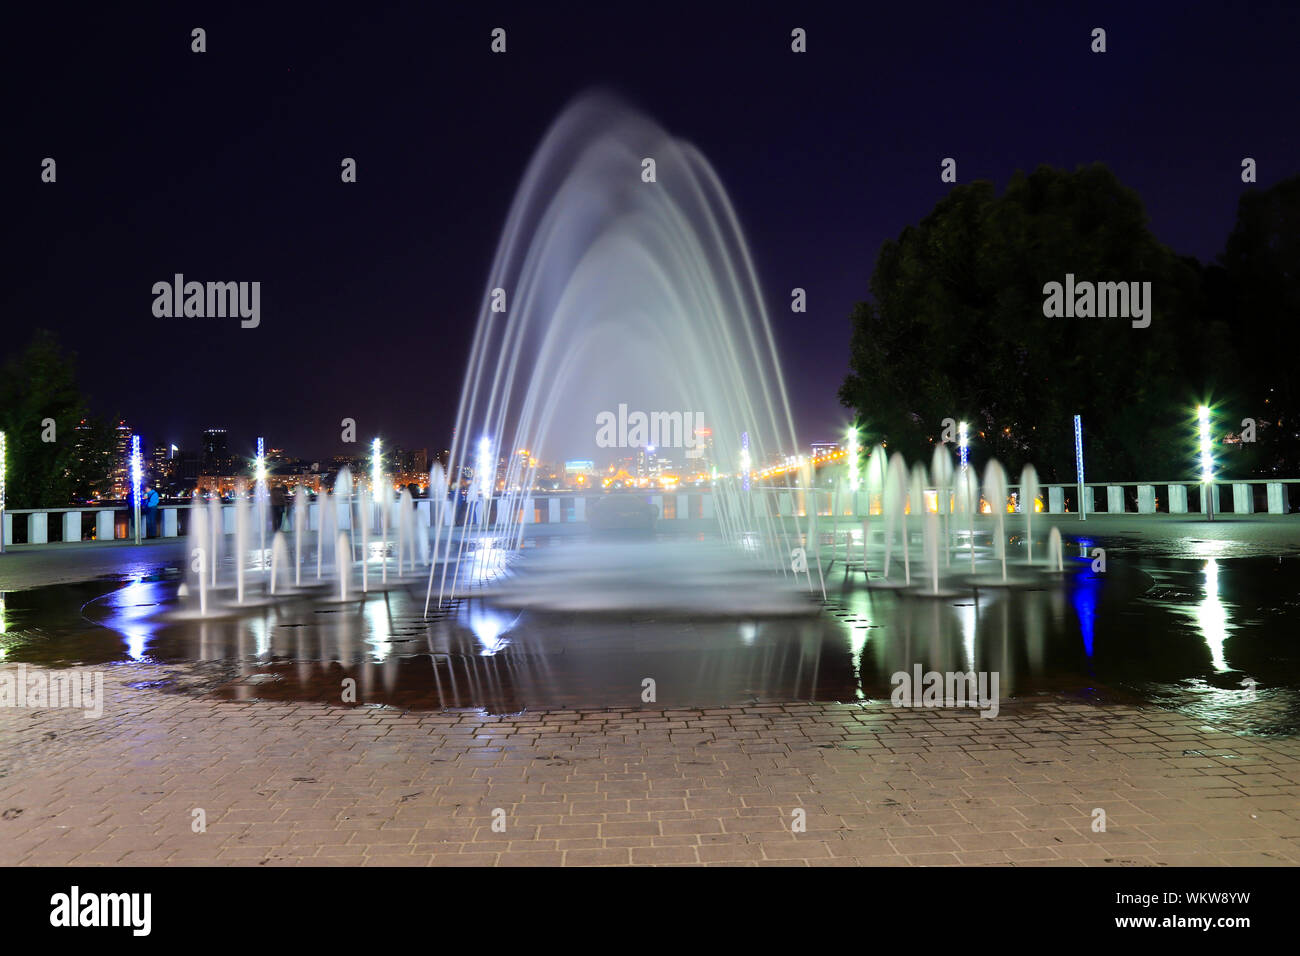 Pittoresque, belle fontaine sur le fond du ciel nocturne en ville. Voir la soirée de Dnepropetrovsk, Ukraine, ville de Dnipro. Banque D'Images